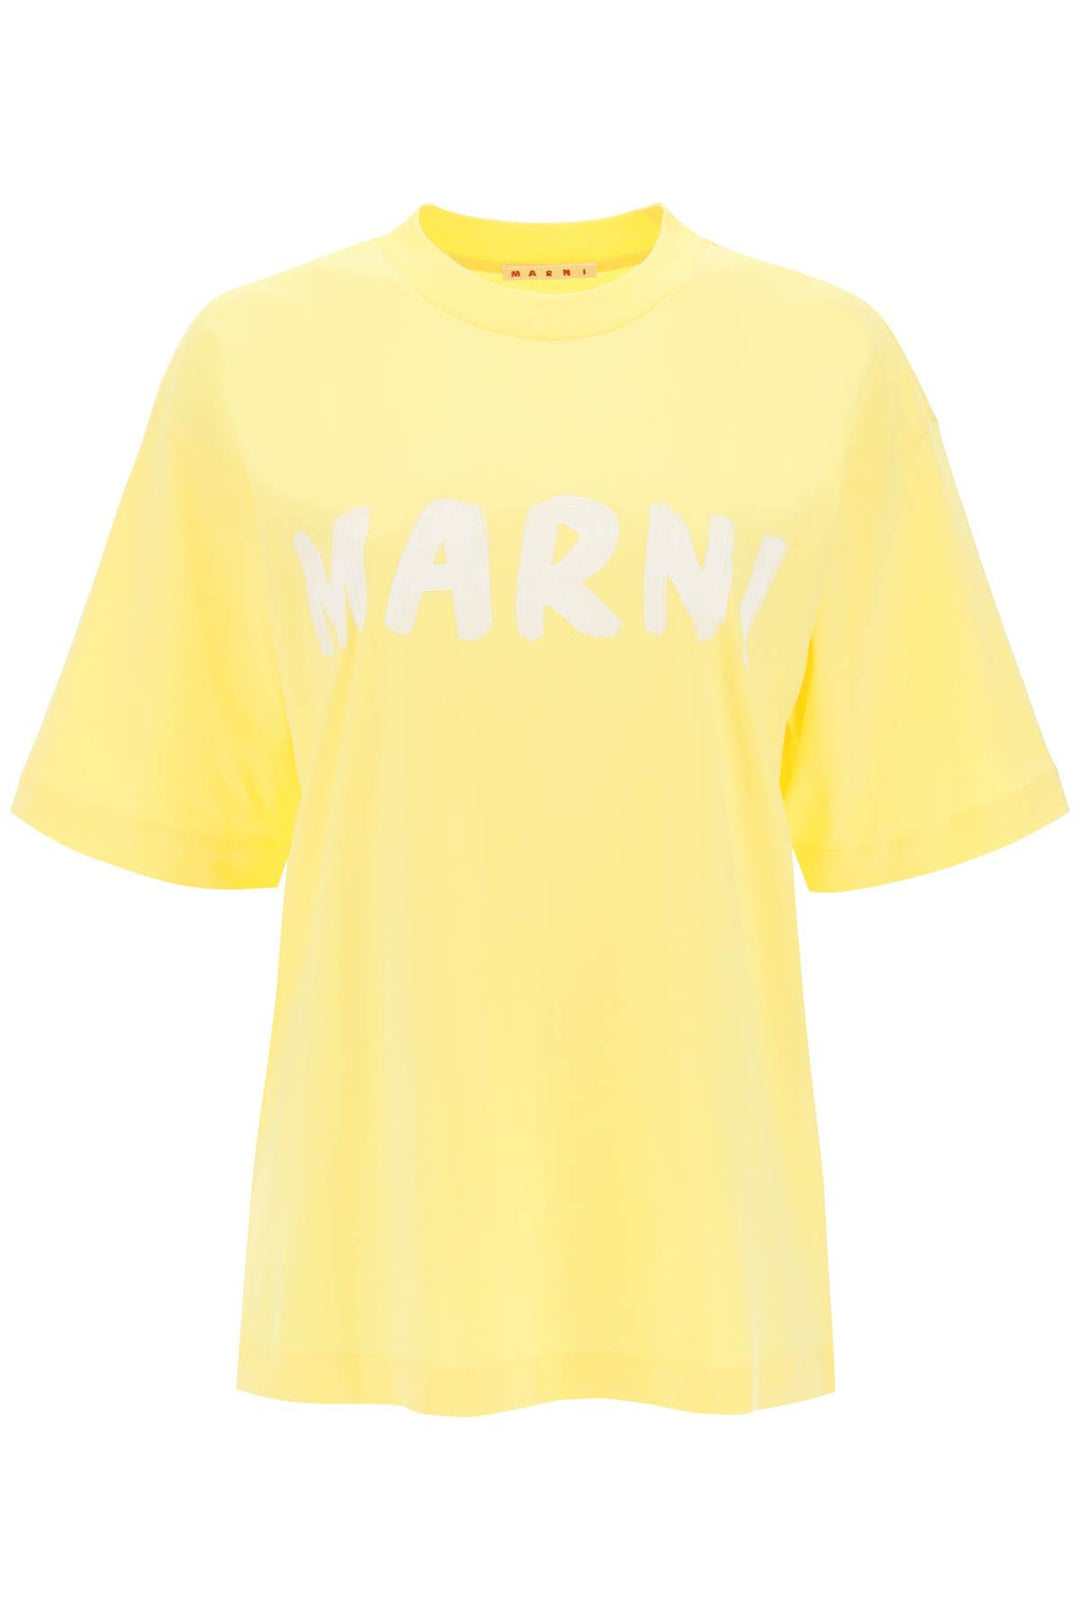 T Shirt Con Maxi Stampa Logo - Marni - Donna